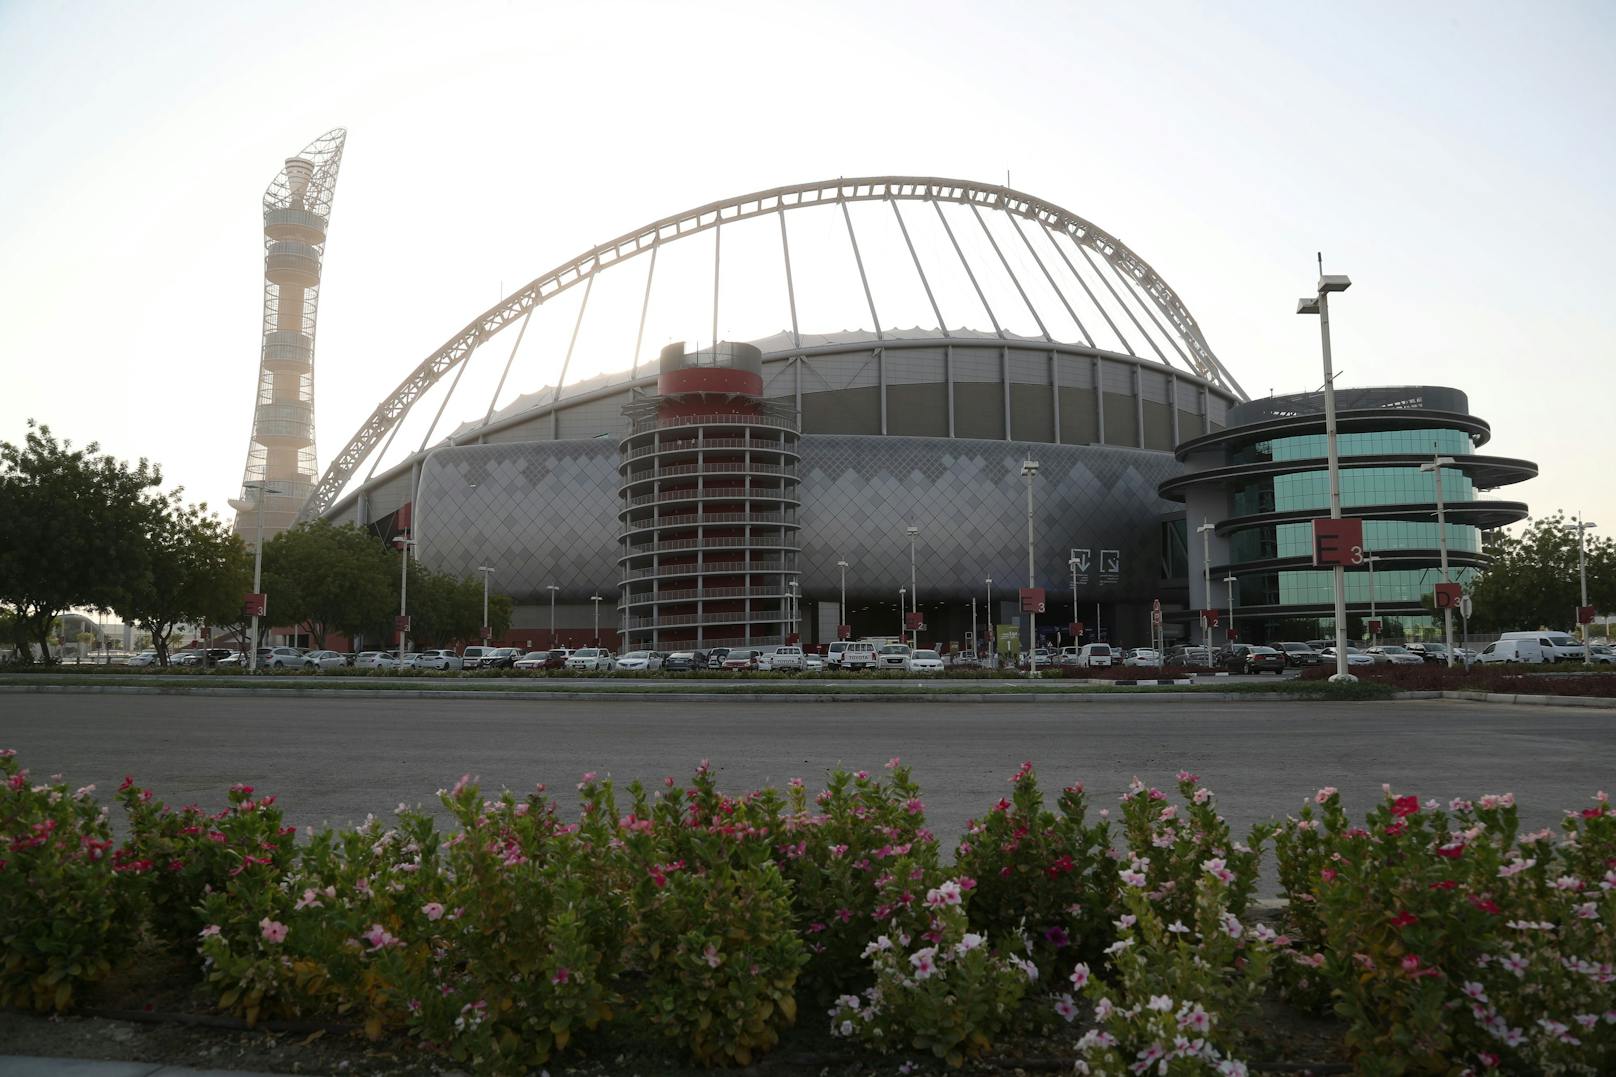 Das Stadion Khalifa International steht seit 1976, wurde aber für die WM renoviert. Die Bögen des "alten" Ovals blieben dabei erhalten, die Fassade ist neu.